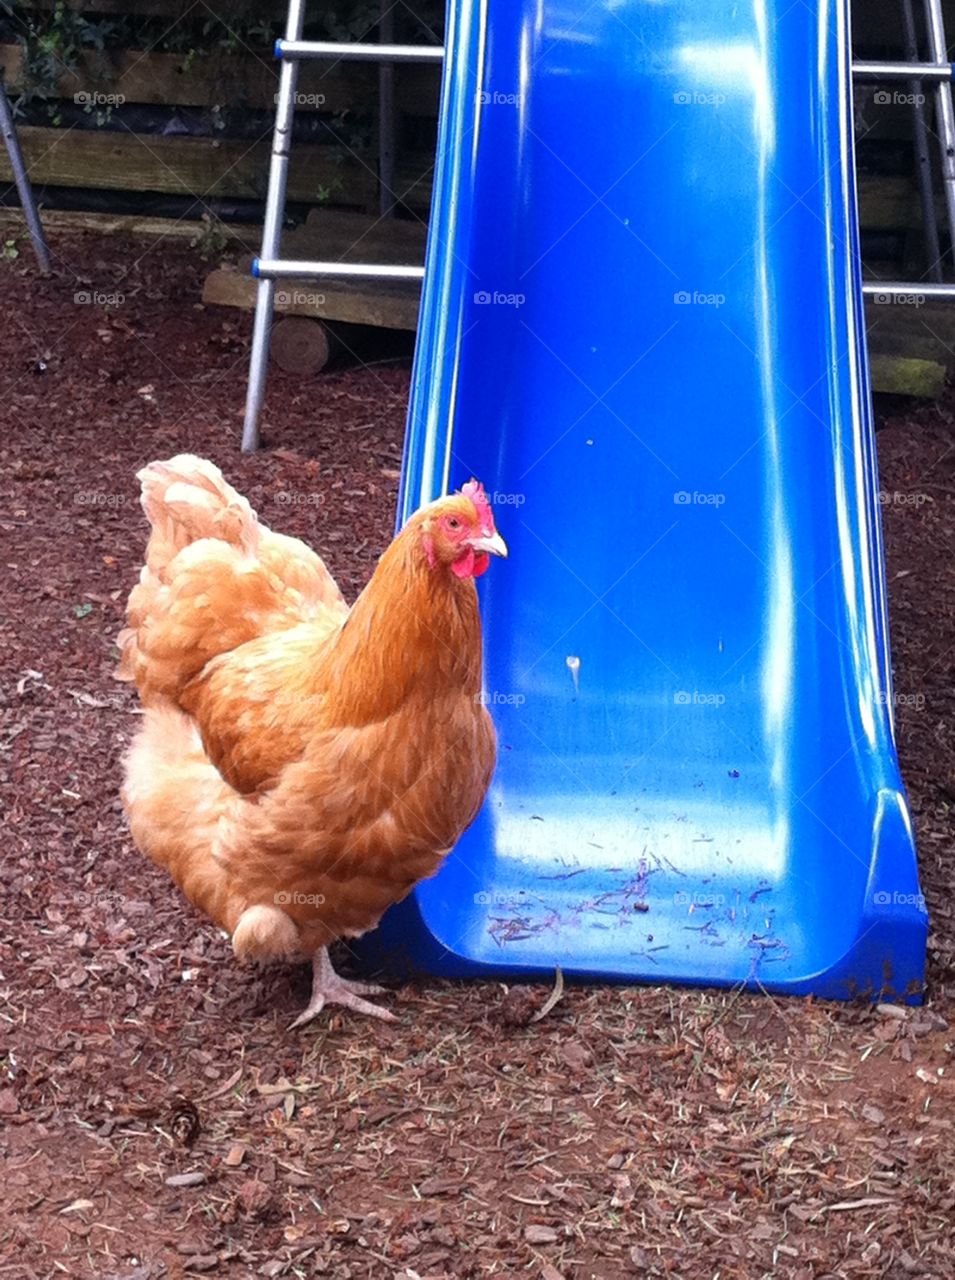 Chicken near blue slide